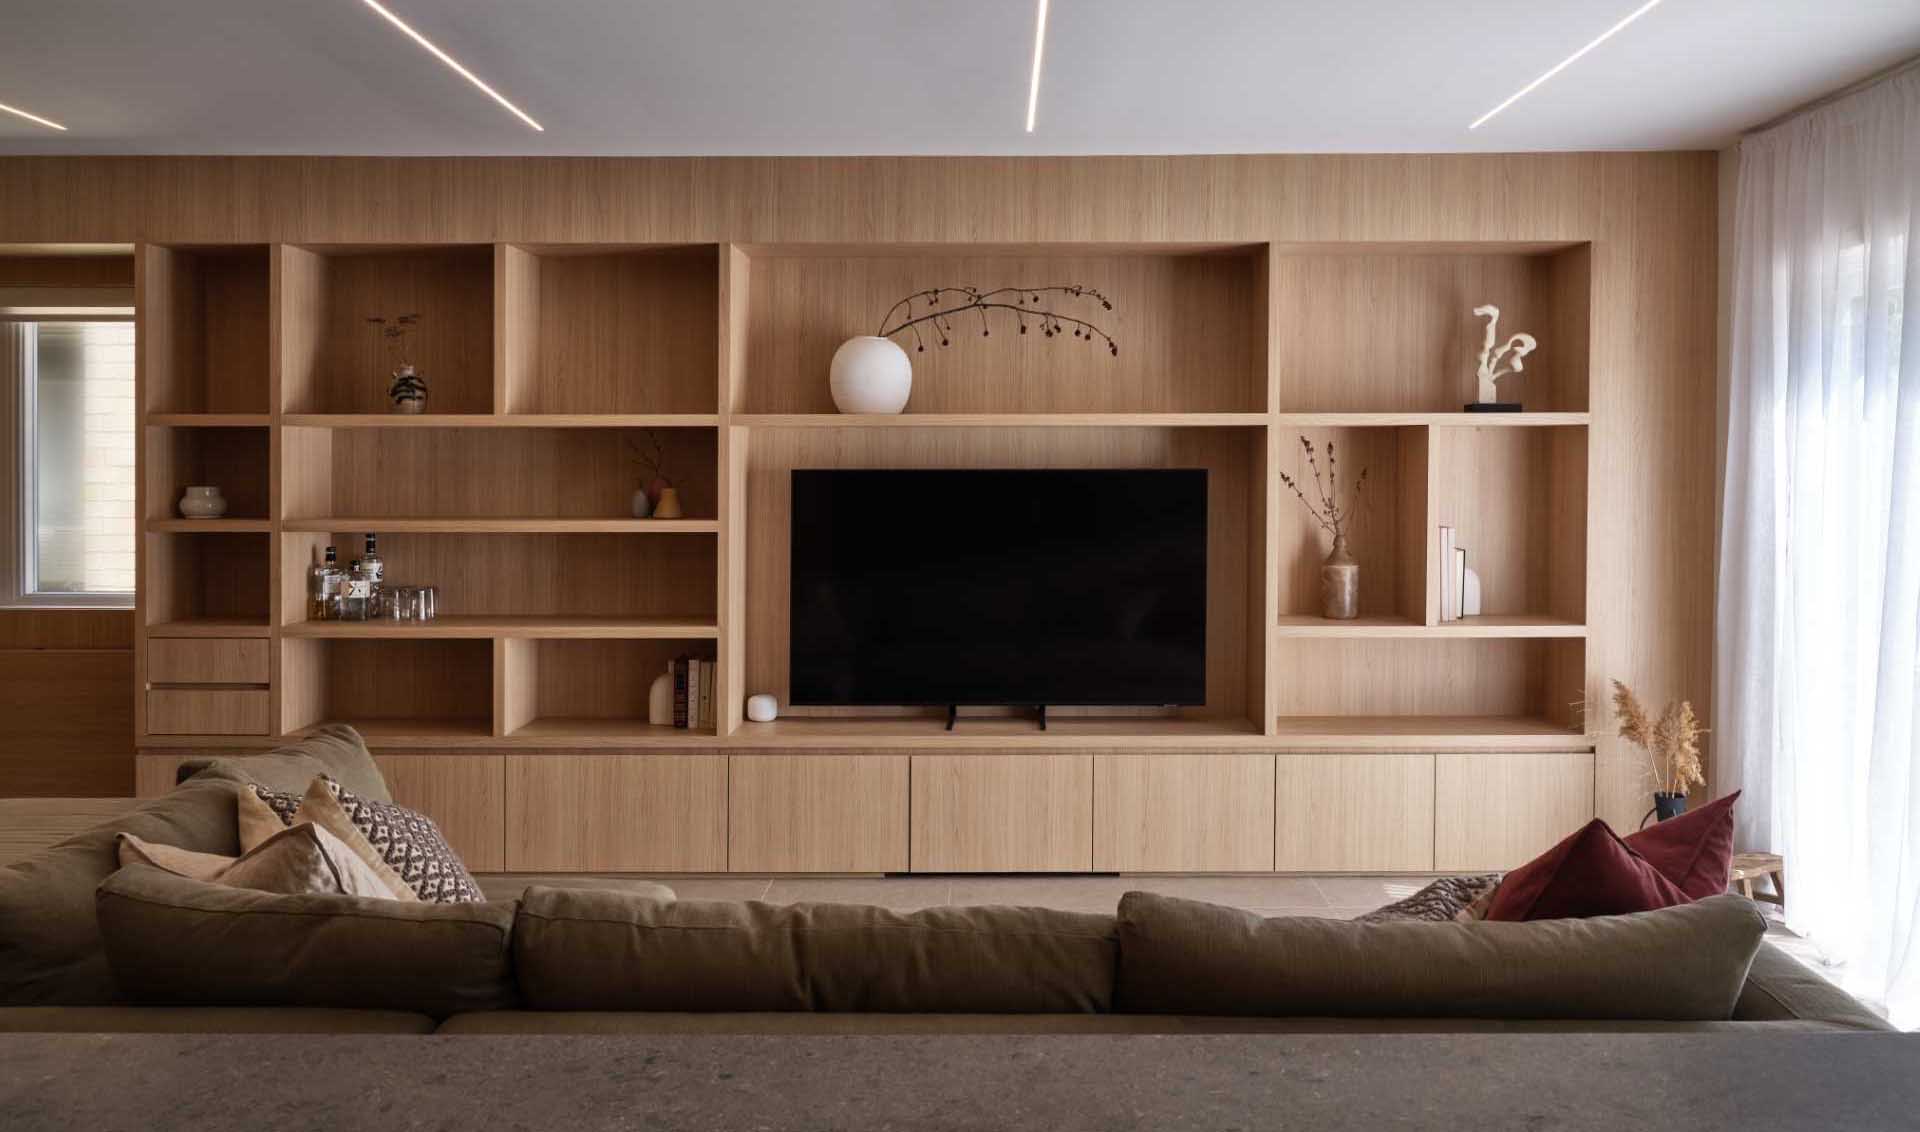 اتاق نشیمن و فضای کار با آسیاب های چوبی طراحی شده اند که دور تلویزیون را احاطه کرده و فضای ذخیره سازی، نمایشگر و میزهای تاشو را در خود جای داده است.